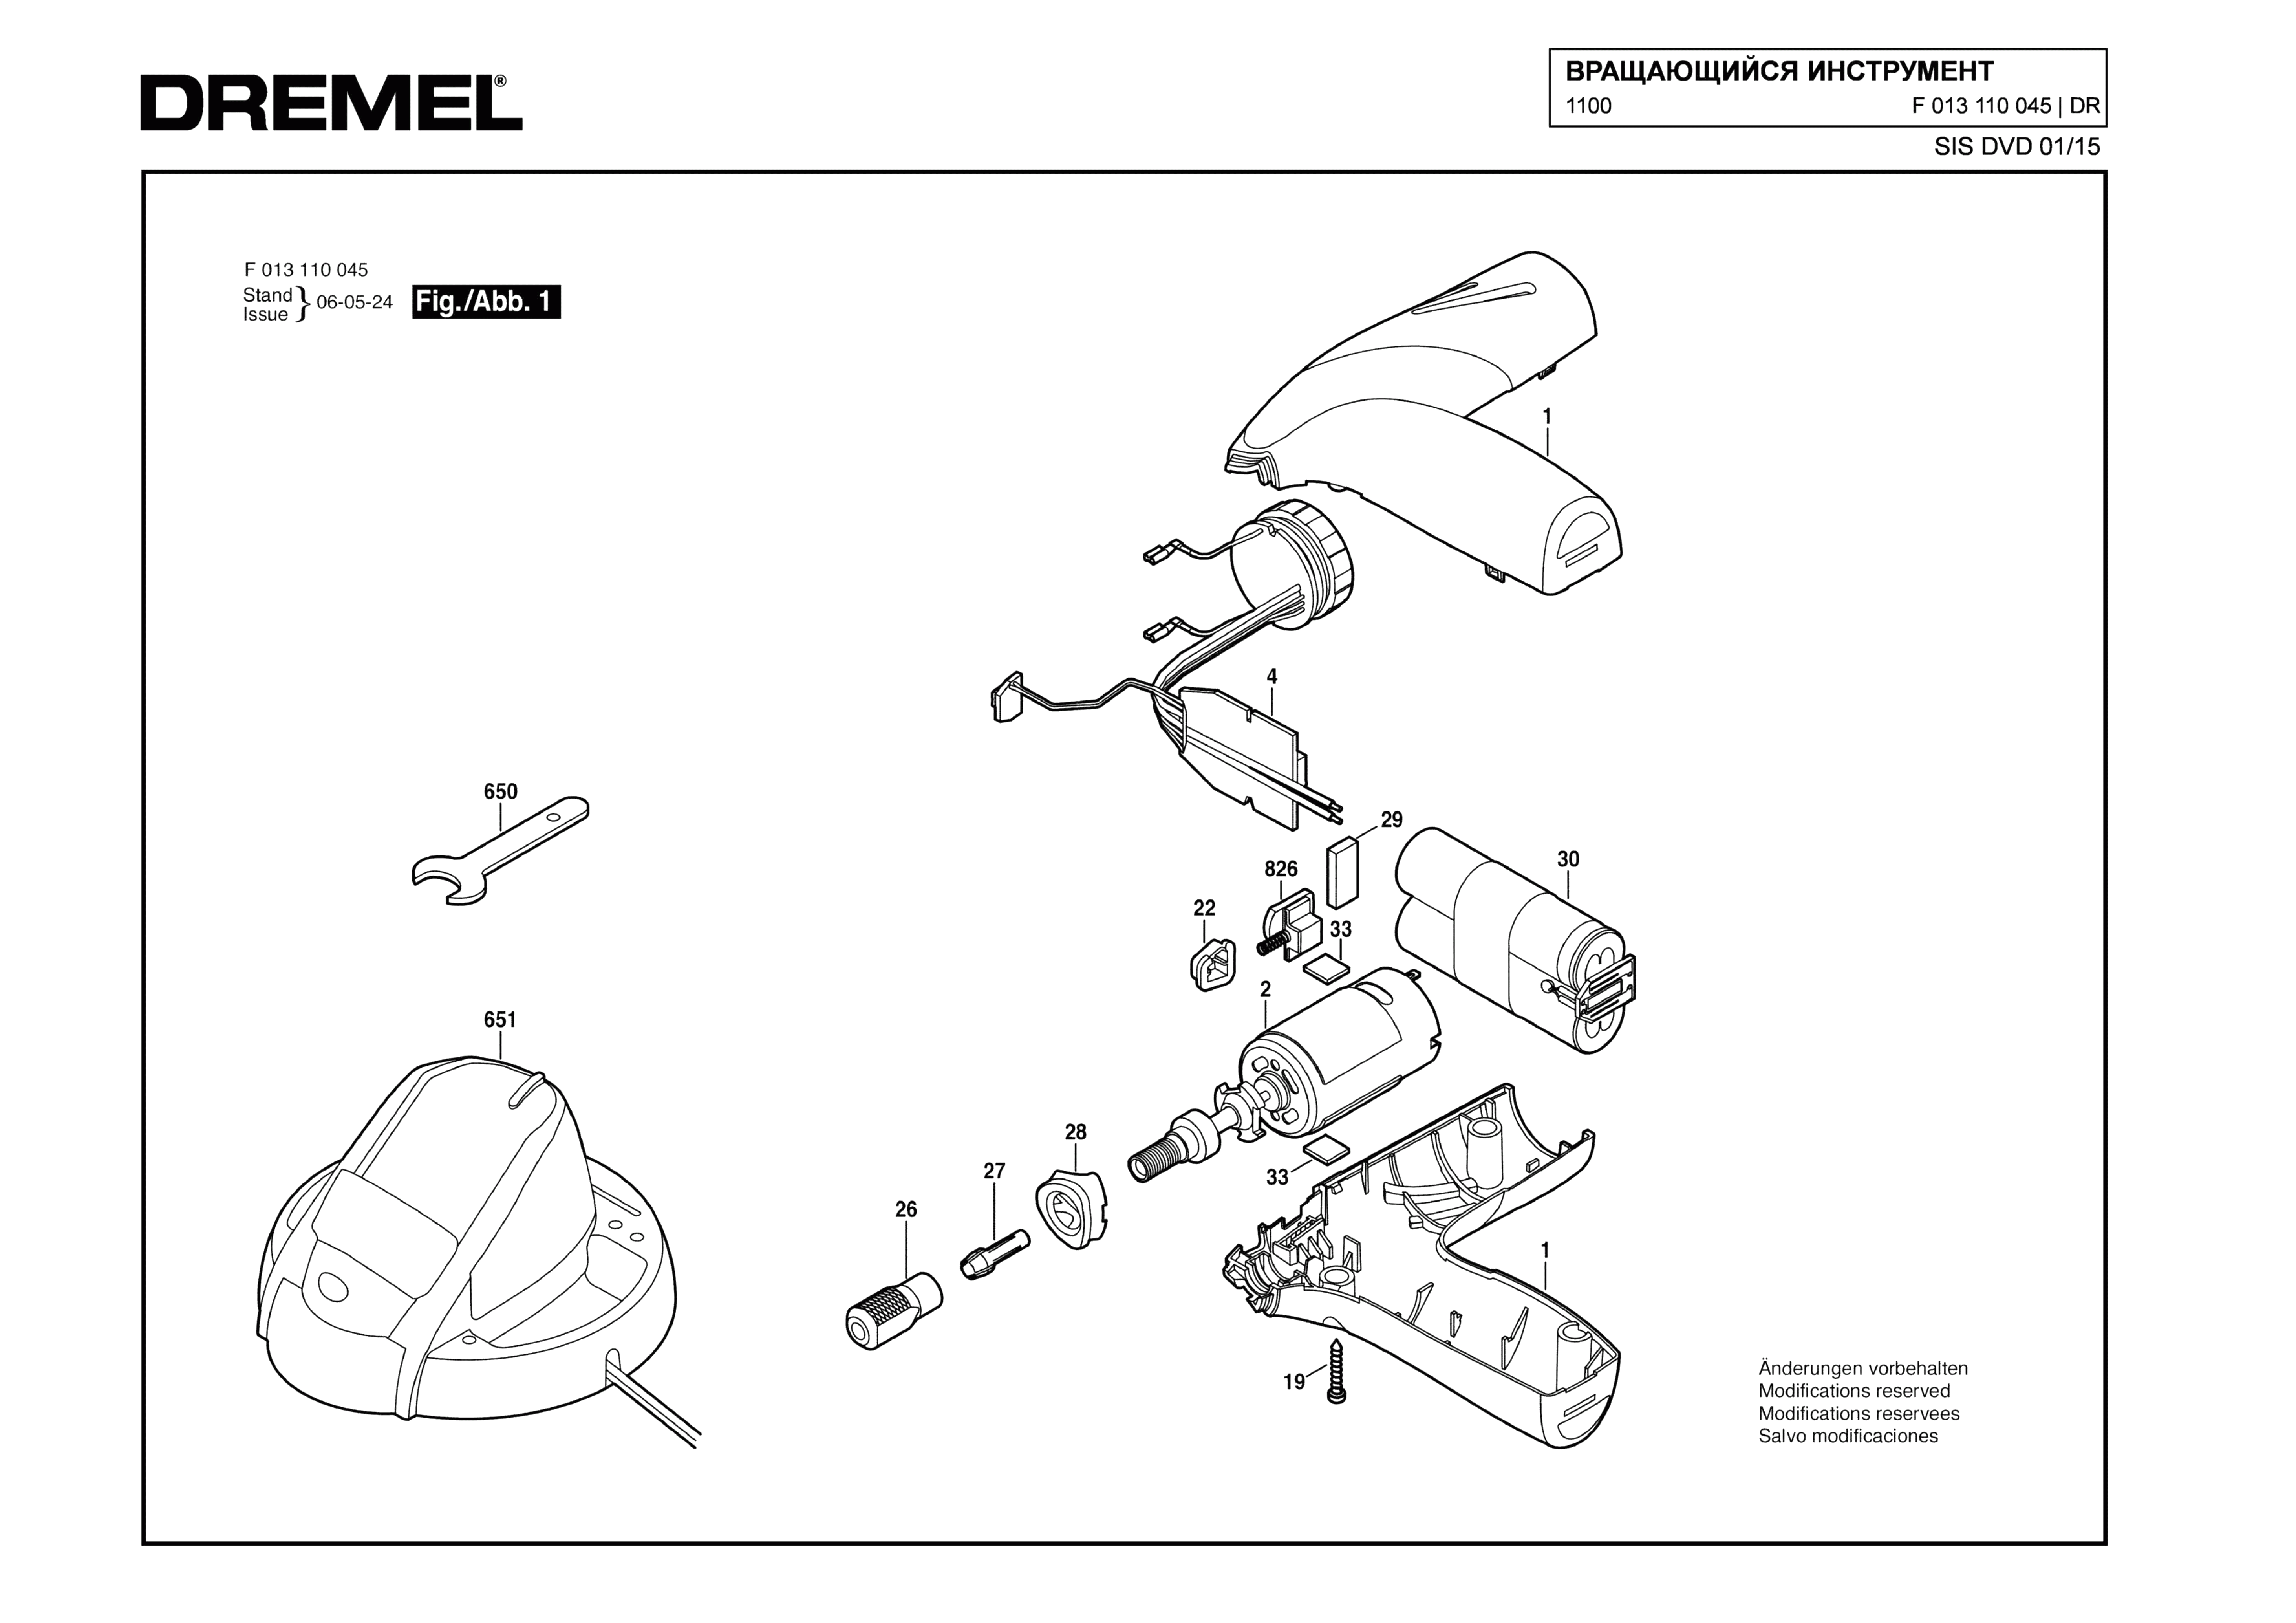 Шлифовальная машина Dremel 1100 (ТИП F013110045)